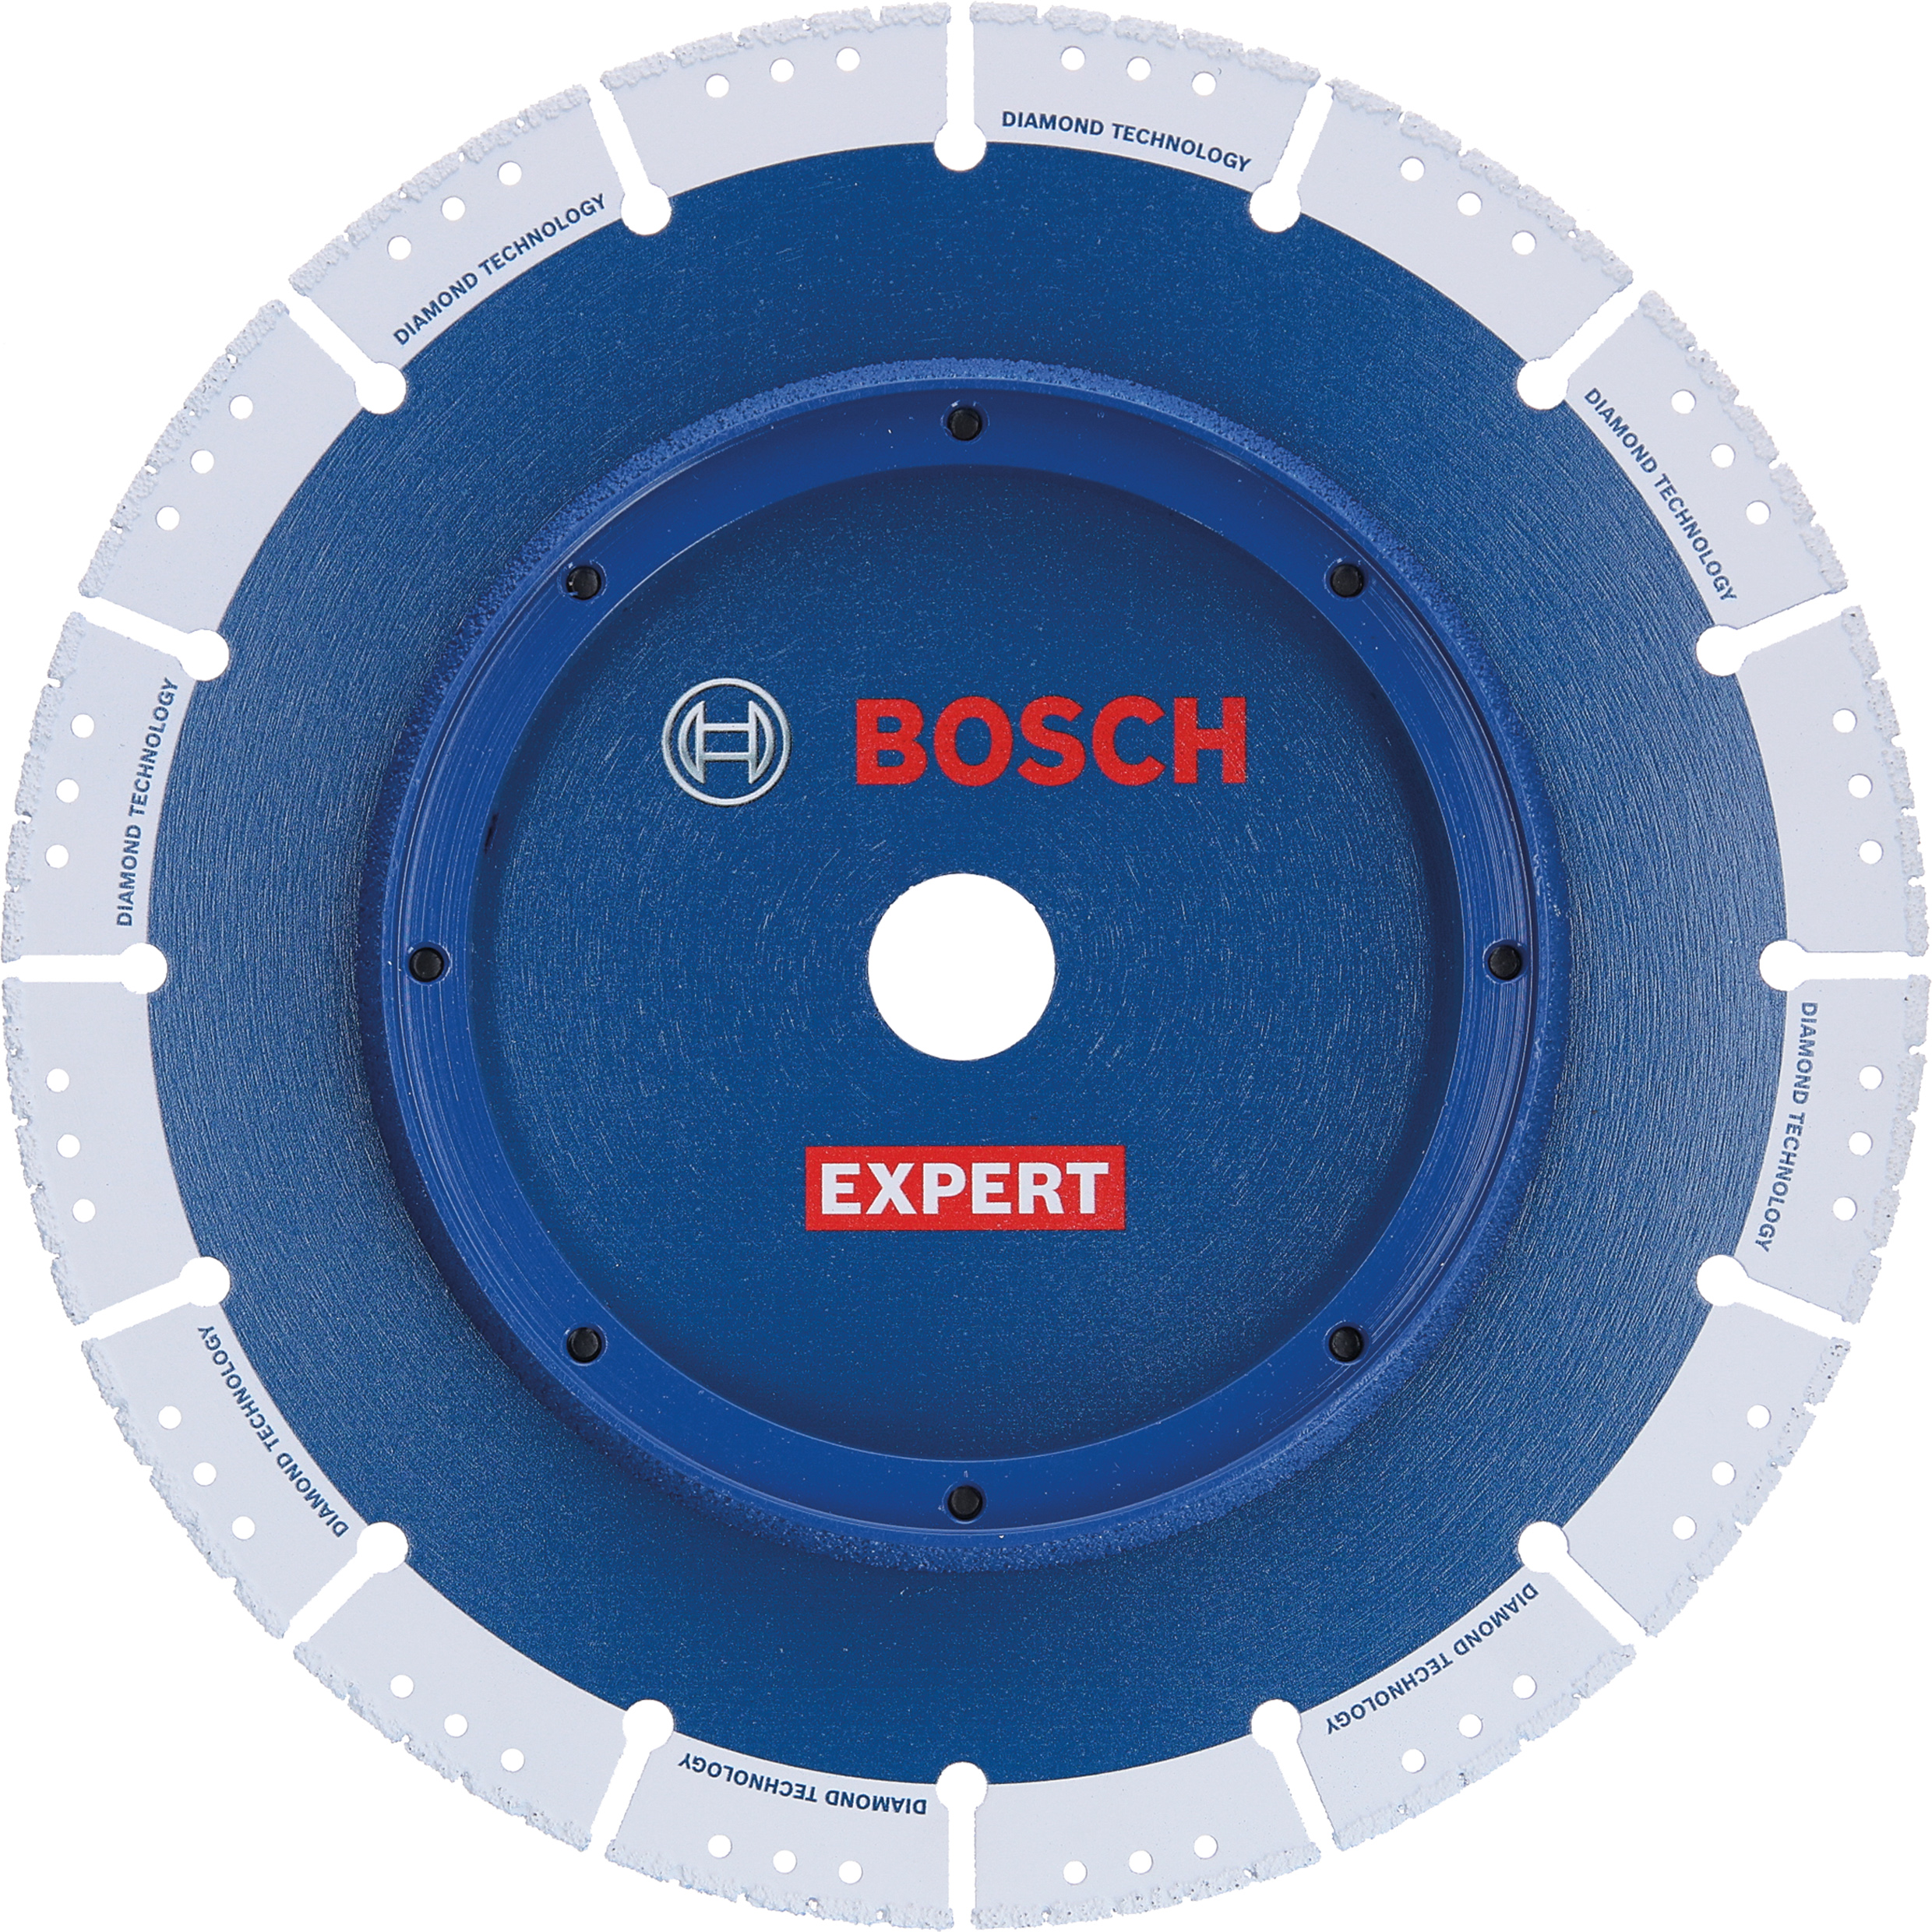 Diamond Wheel Cut Pipe 230 EXPERT mm Bosch